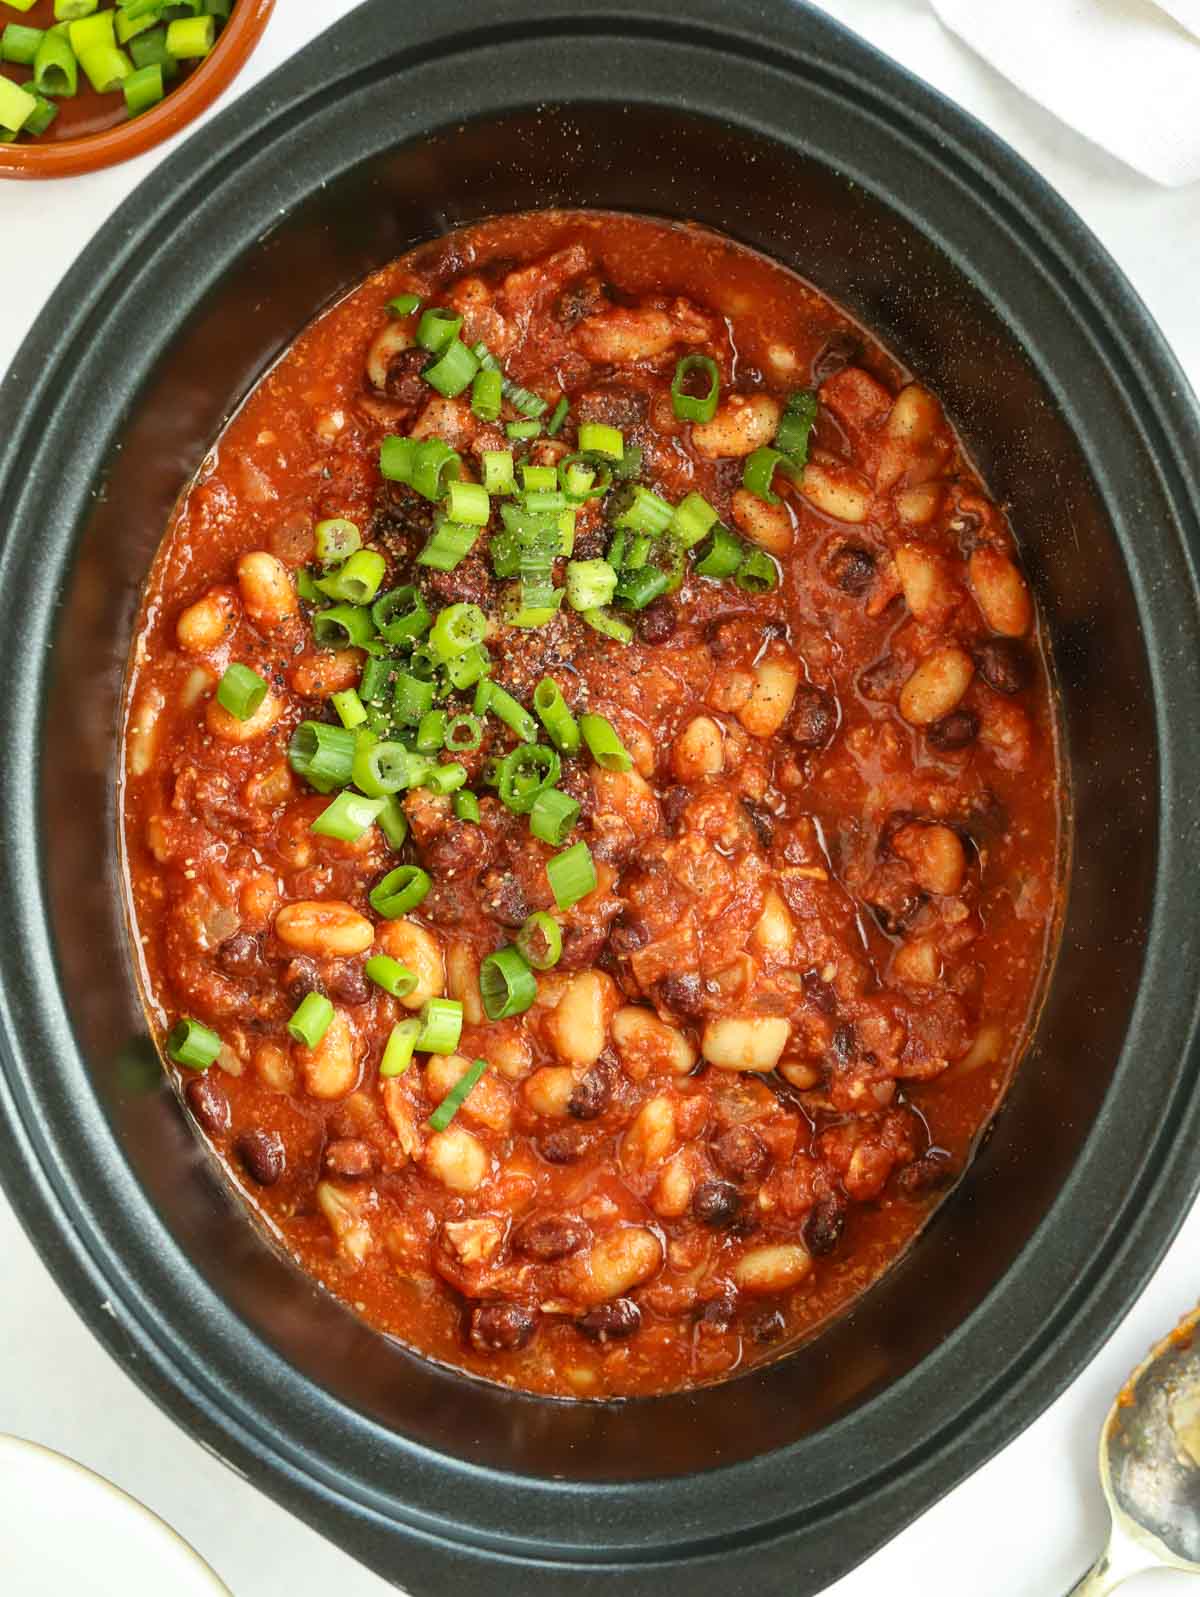 Slow cooker recipe for homemade baked beans